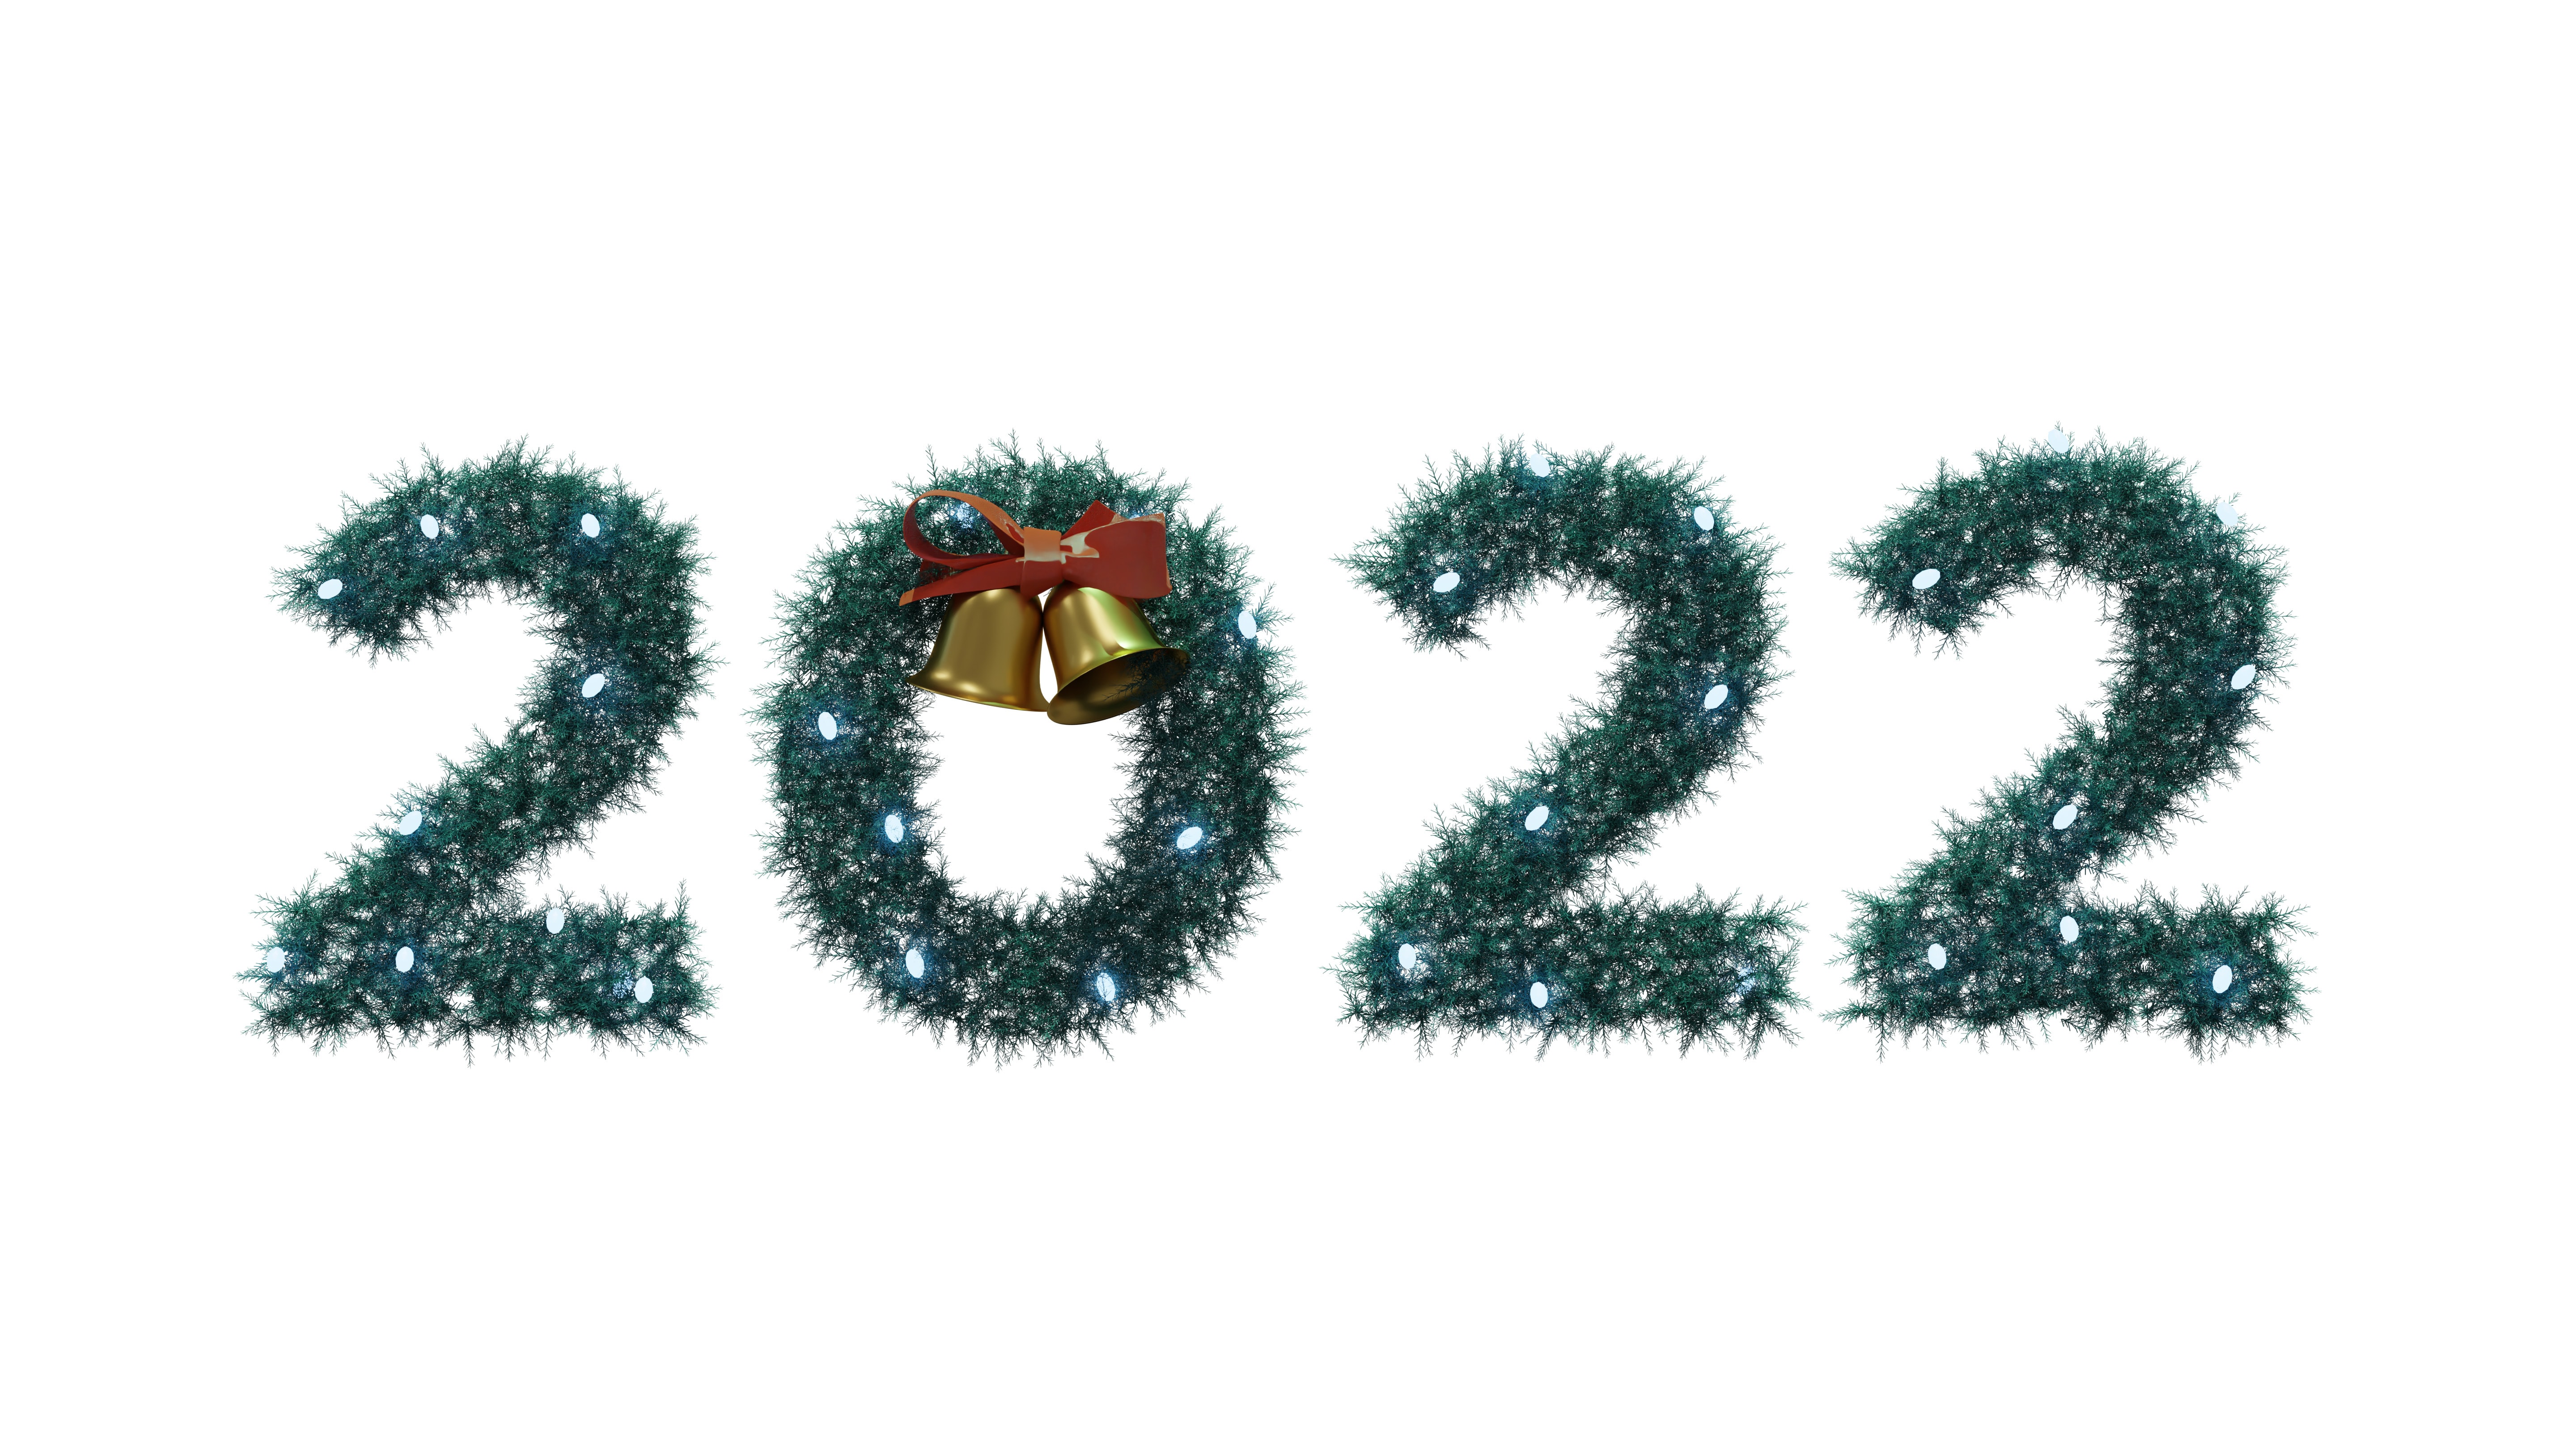 Khám phá không gian thật đặc trưng của Năm mới 2022 với hình nền 4K và các trang trí Giáng sinh tuyệt đẹp. Chỉ cần một cú click chuột, bạn sẽ được chuyển đến một thế giới tươi vui, ấm áp và đầy ý nghĩa. Tận hưởng những giây phút đầy cảm xúc và đón nhận năm mới rực rỡ.